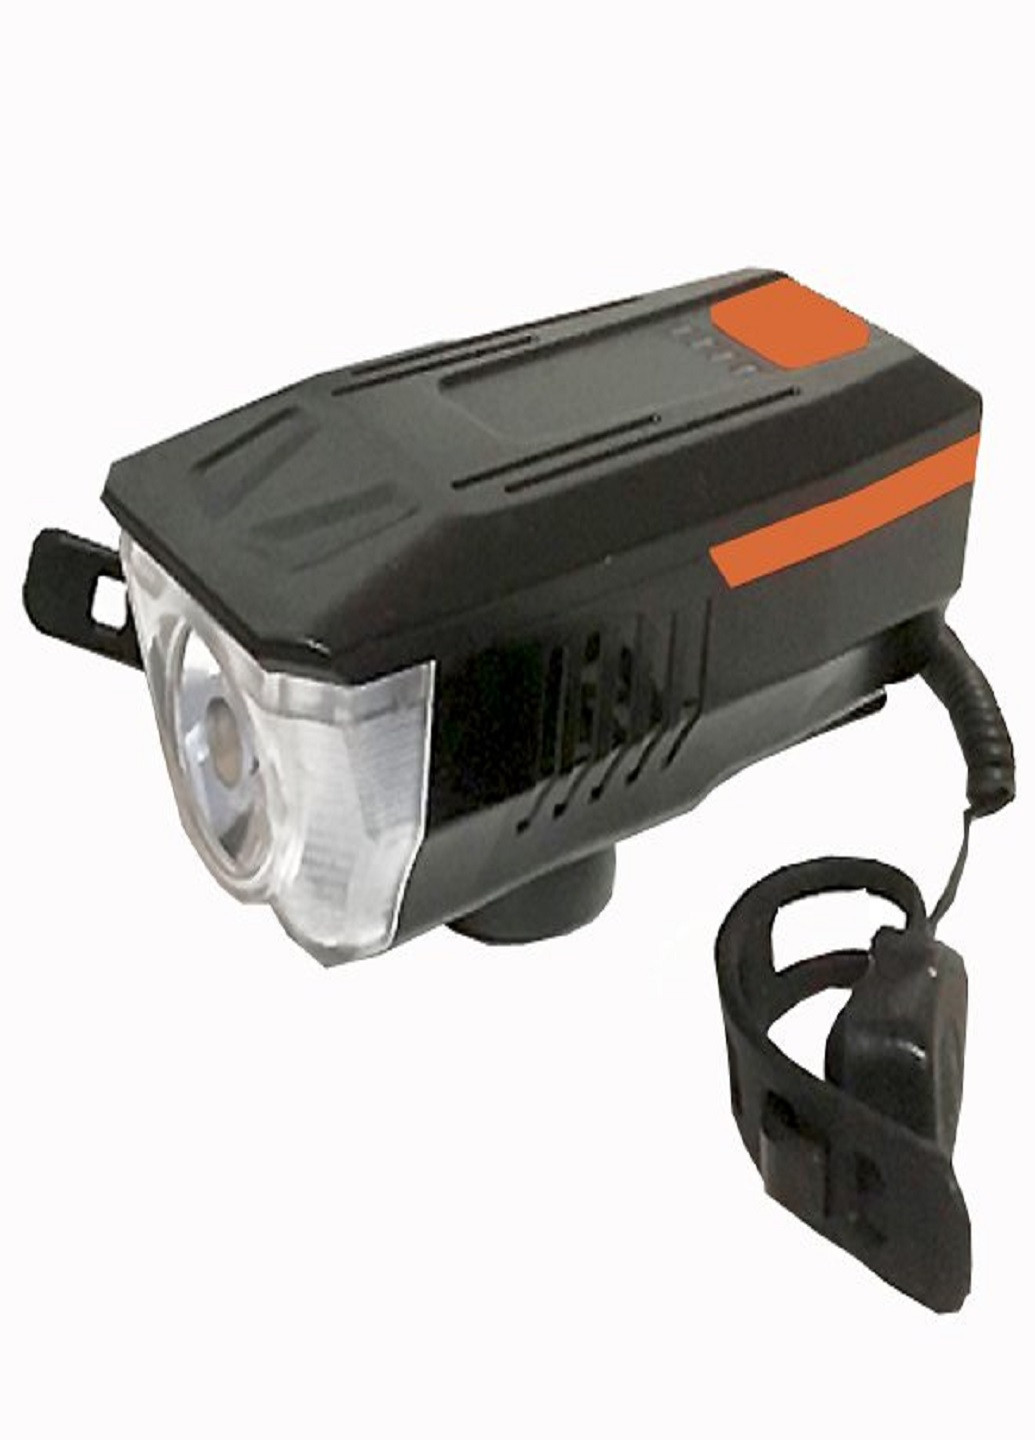 Универсальный аккумуляторный фонарь велосипедный LY-16 влагостойкий со звонком с креплением на руль Оранжевый VTech (253495644)